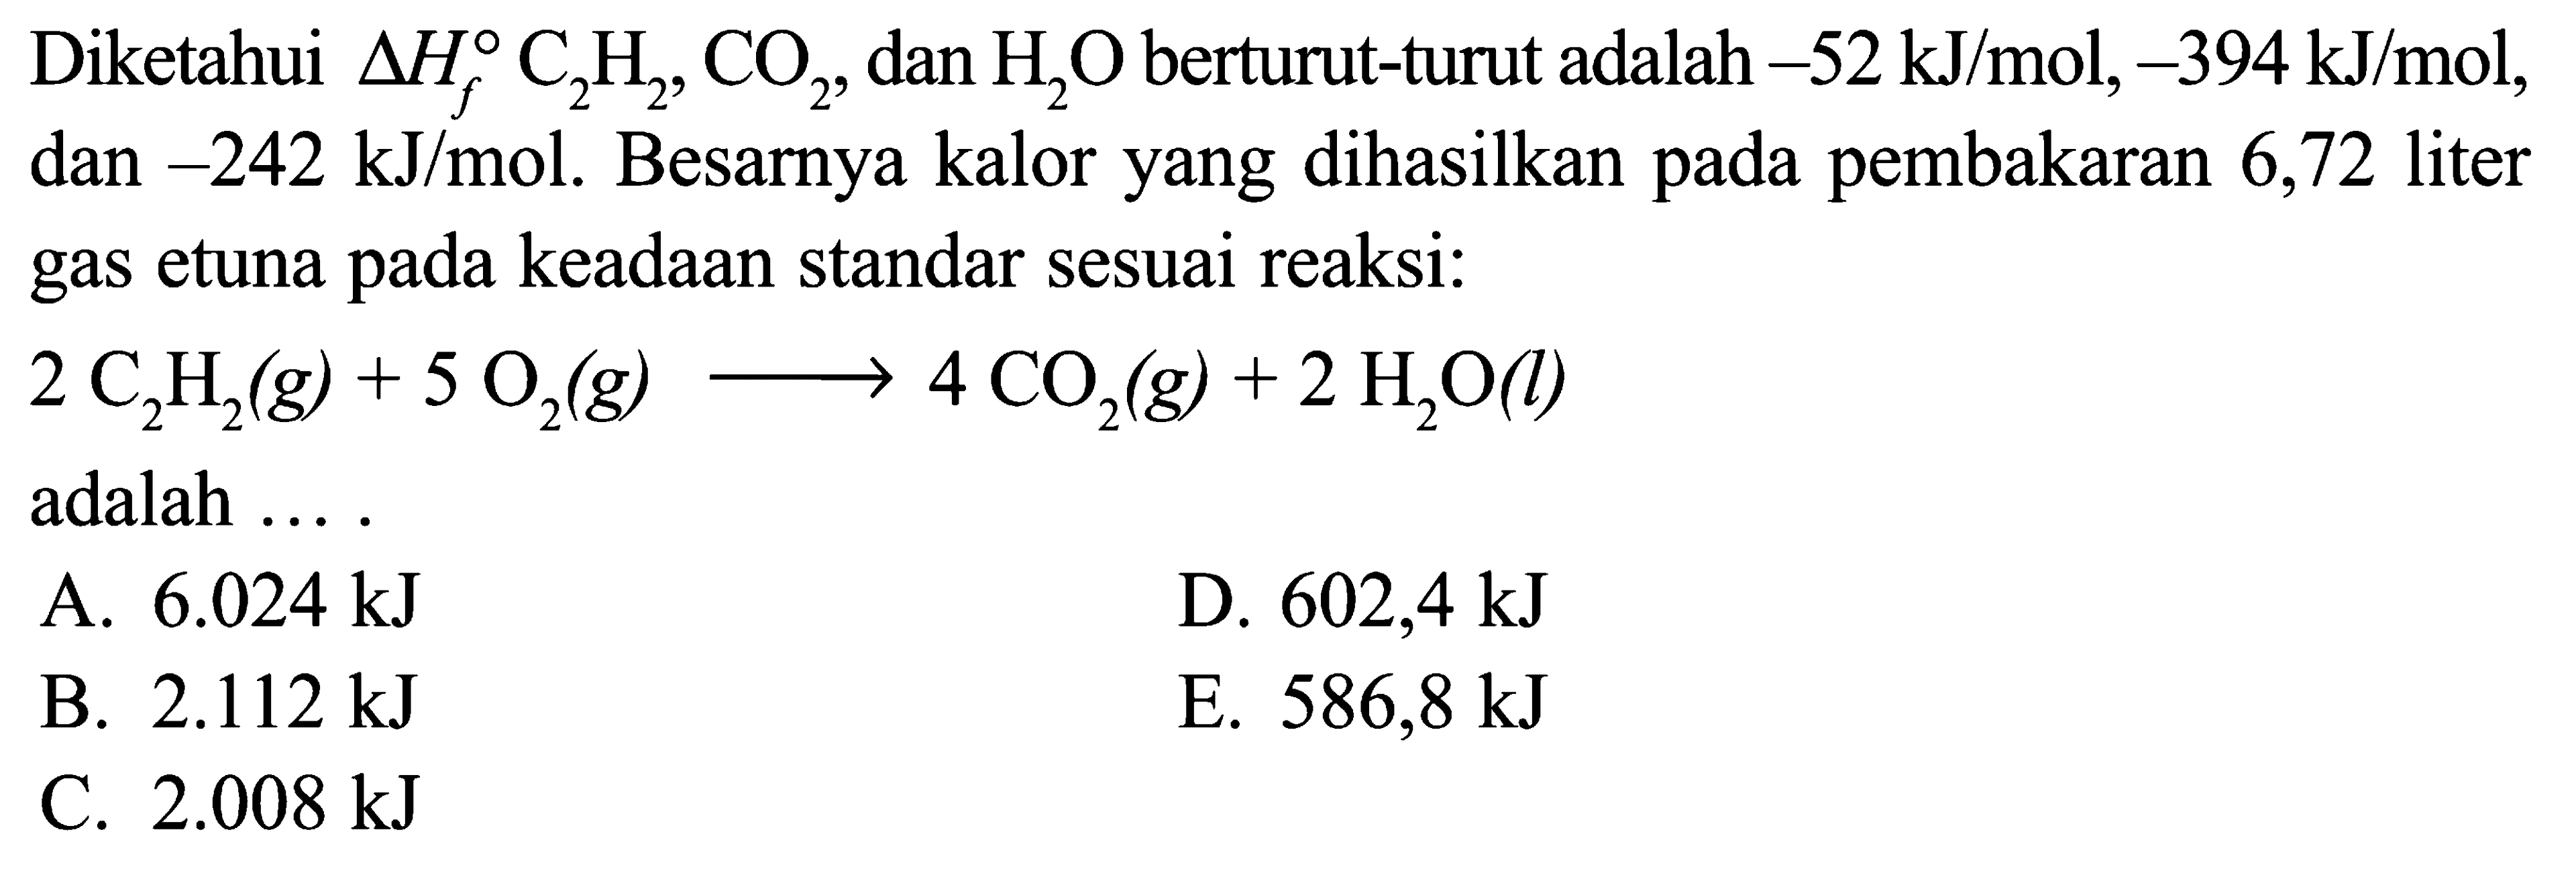 Diketahui delta Hf C2H2, CO2, dan H2O berturut-turut adalah -52 kJ/mol, -394 kJ/mol, dan -242 kJ/mol. Besarnya kalor yang dihasilkan pada pembakaran 6,72 liter gas etuna pada keadaan standar sesuai reaksi: 2 C2H2 (g) + 5 O2 (g) -> 4 CO2 (g) + 2 H2O (l) adalah ....